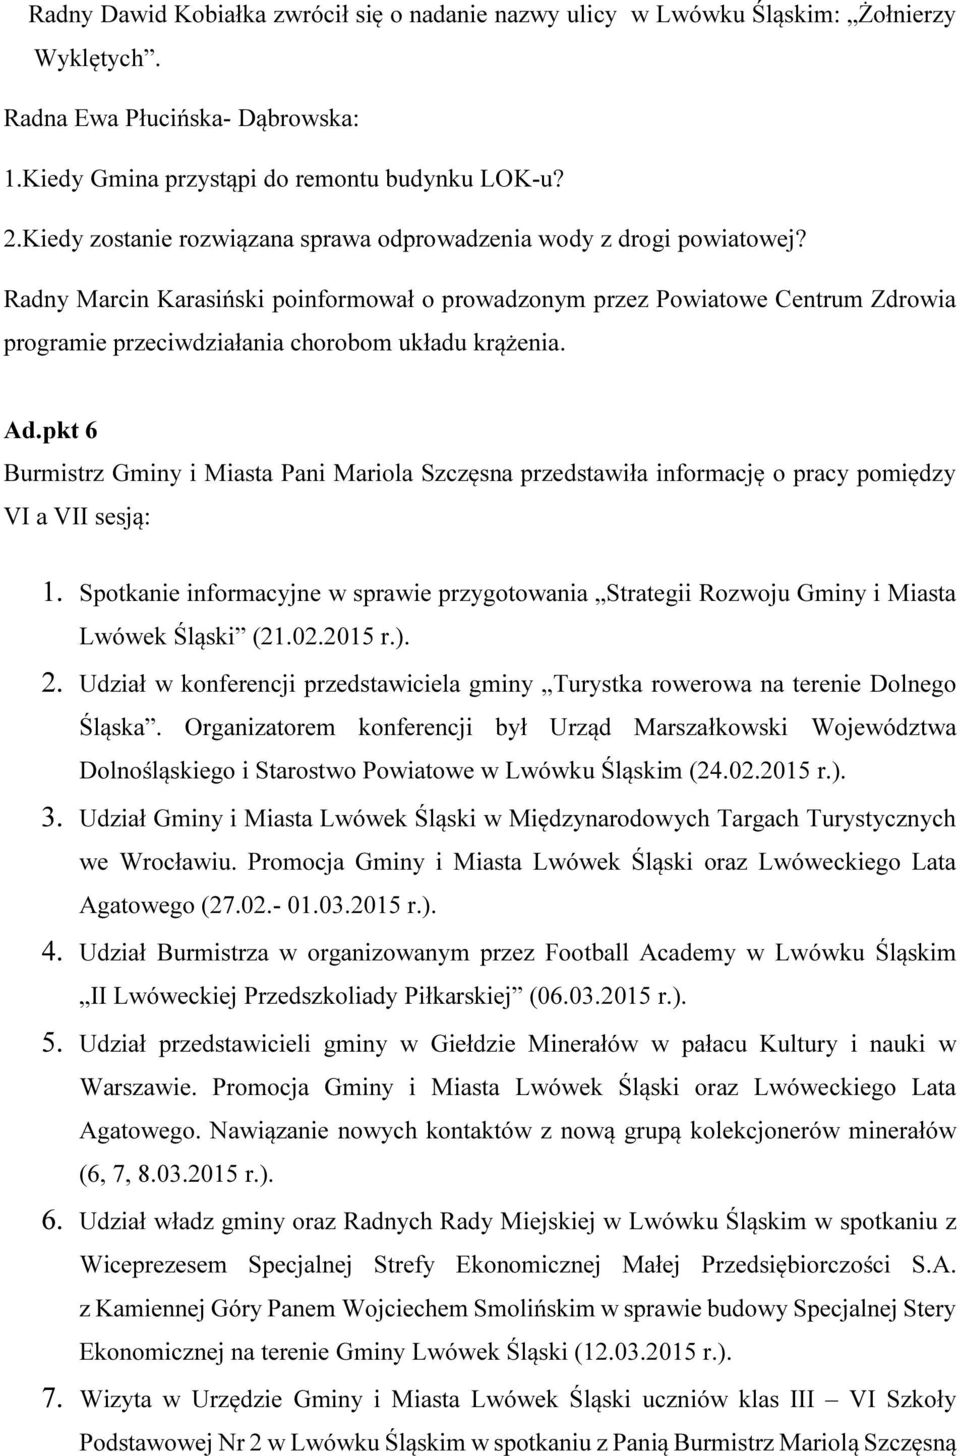 Radny Marcin Karasiński poinformował o prowadzonym przez Powiatowe Centrum Zdrowia programie przeciwdziałania chorobom układu krążenia. Ad.